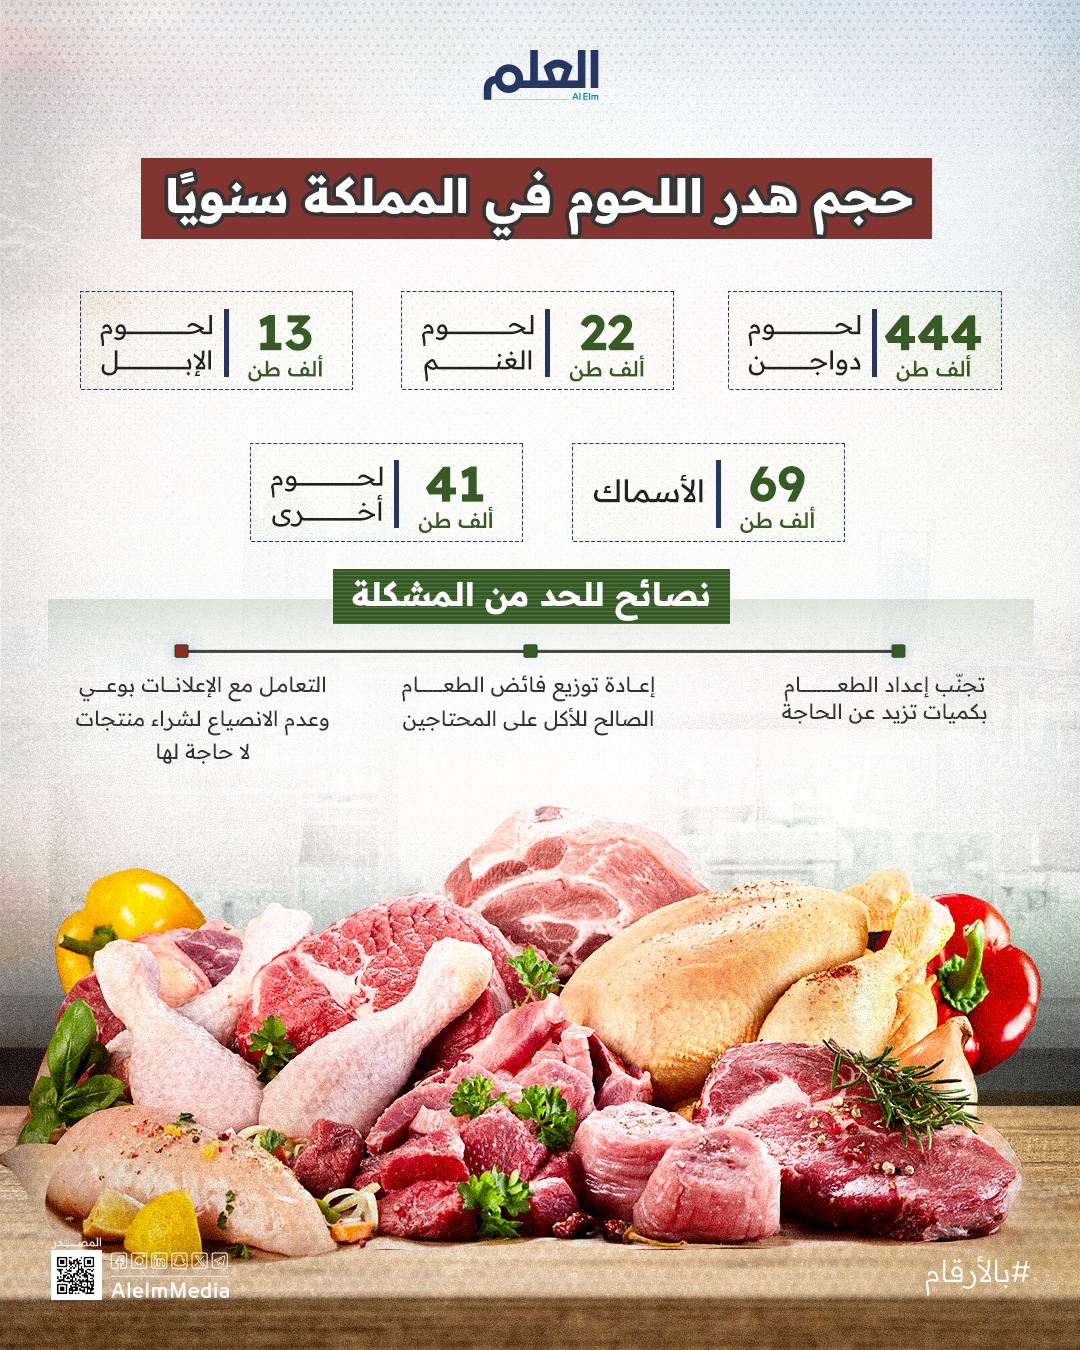 حجم هدر اللحوم في المملكة سنويًا